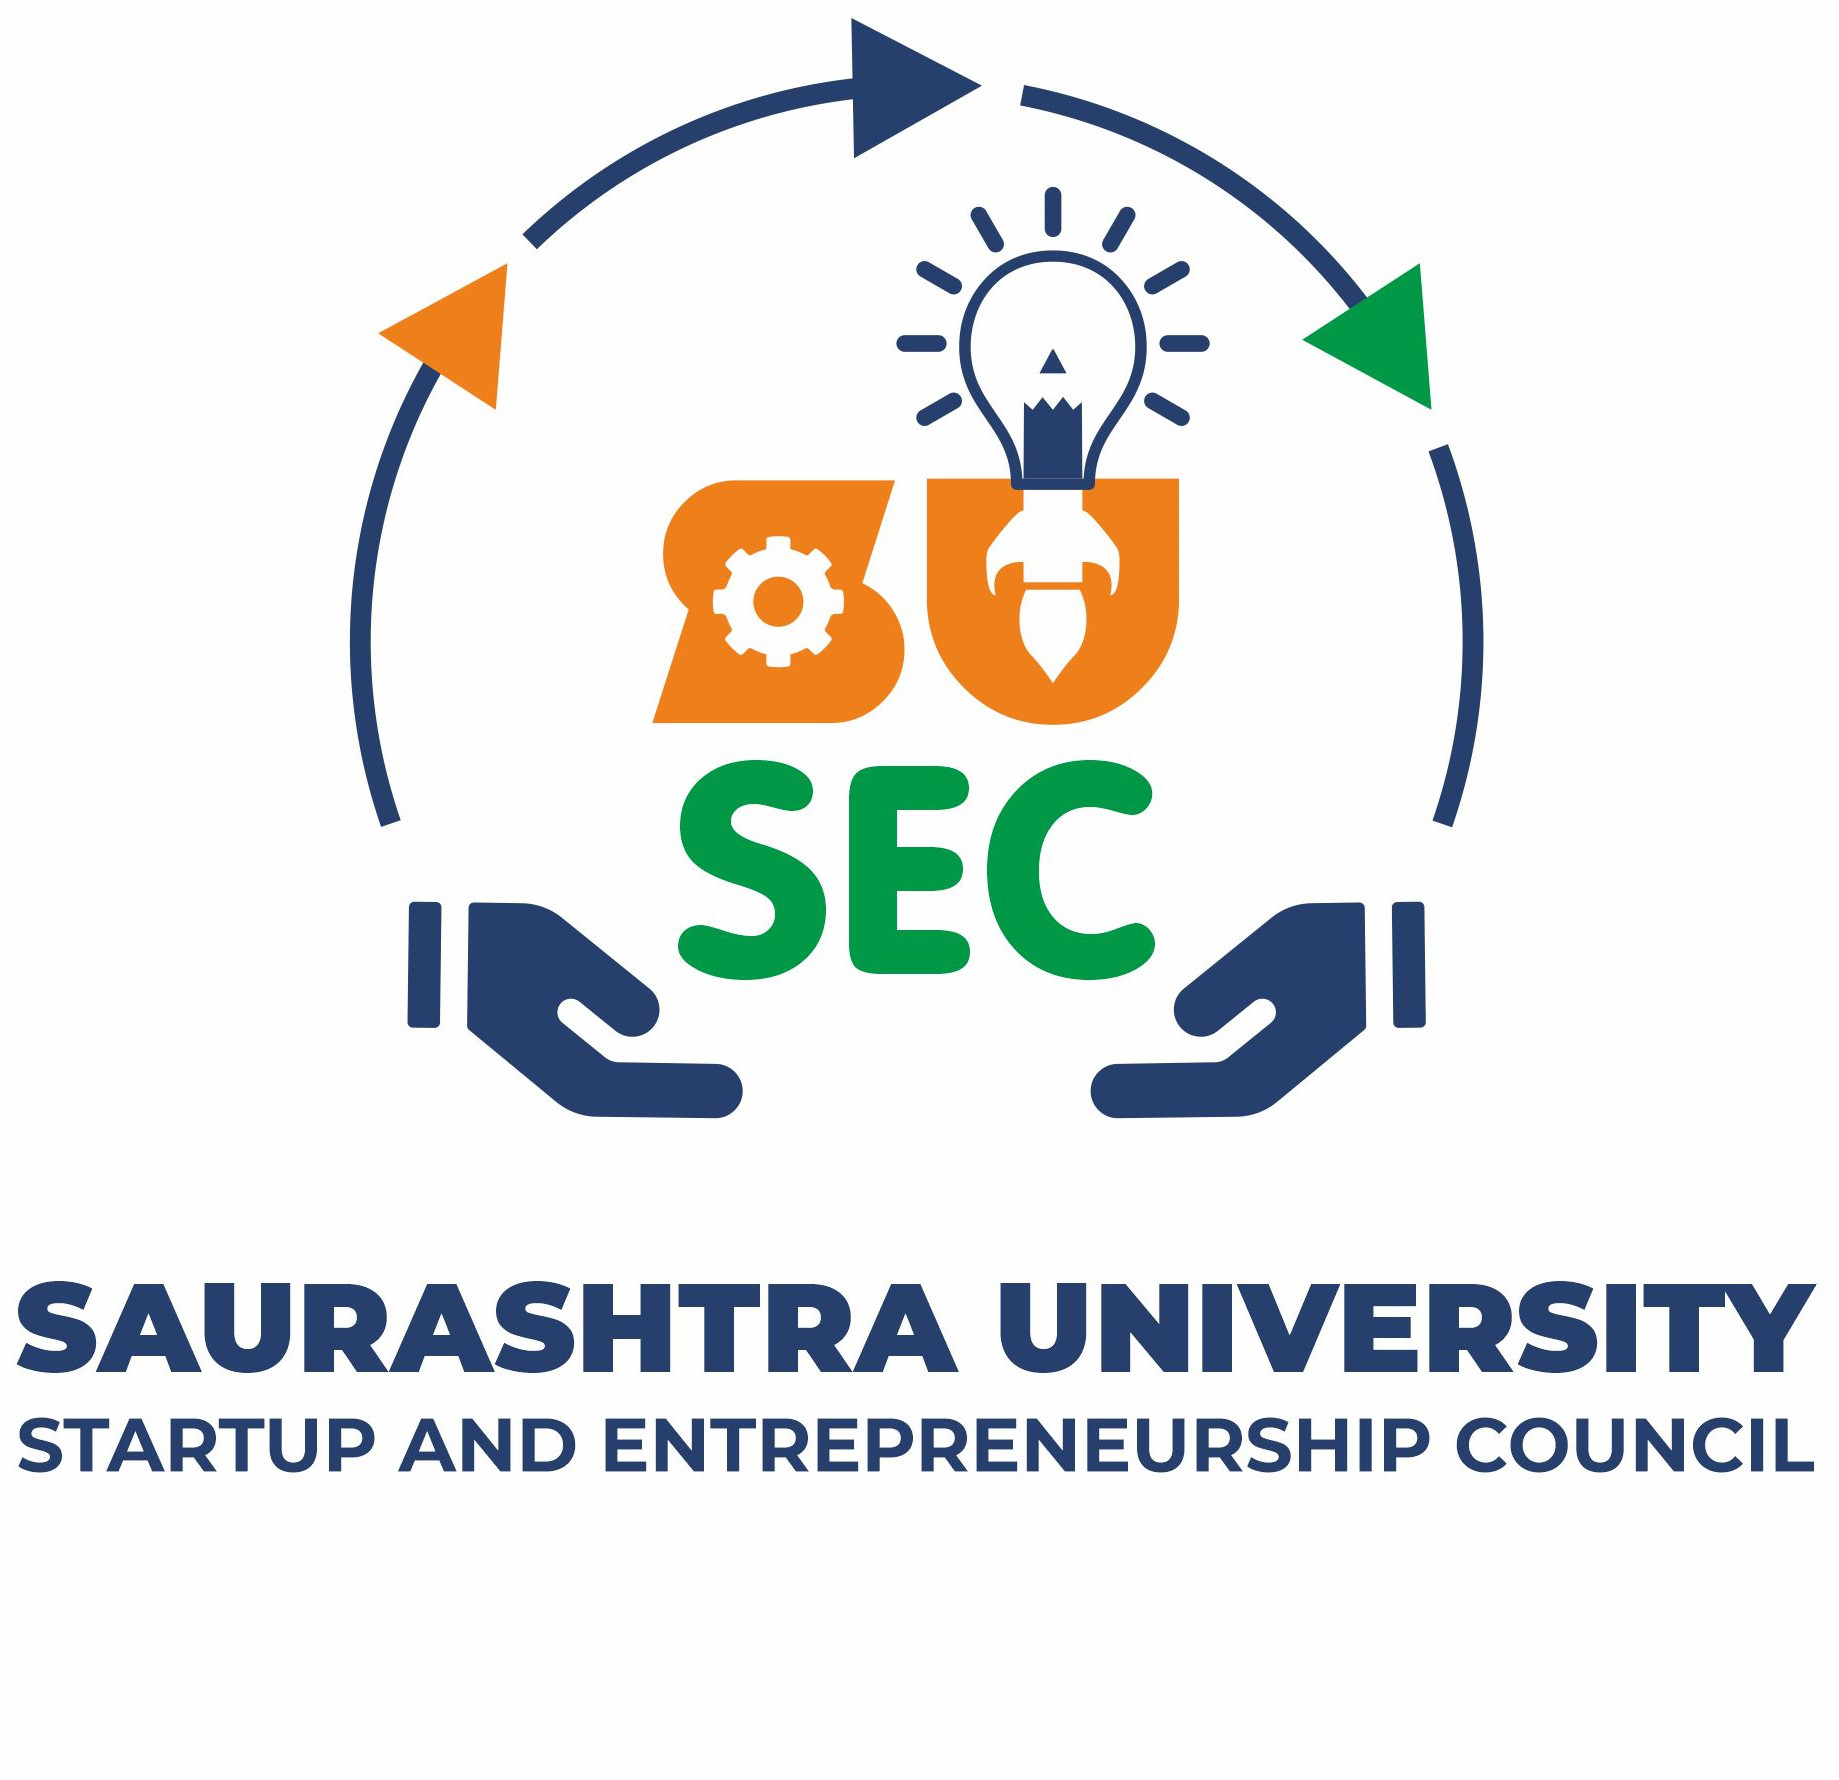 Saurashtra University APK (Android App) - تنزيل مجاني